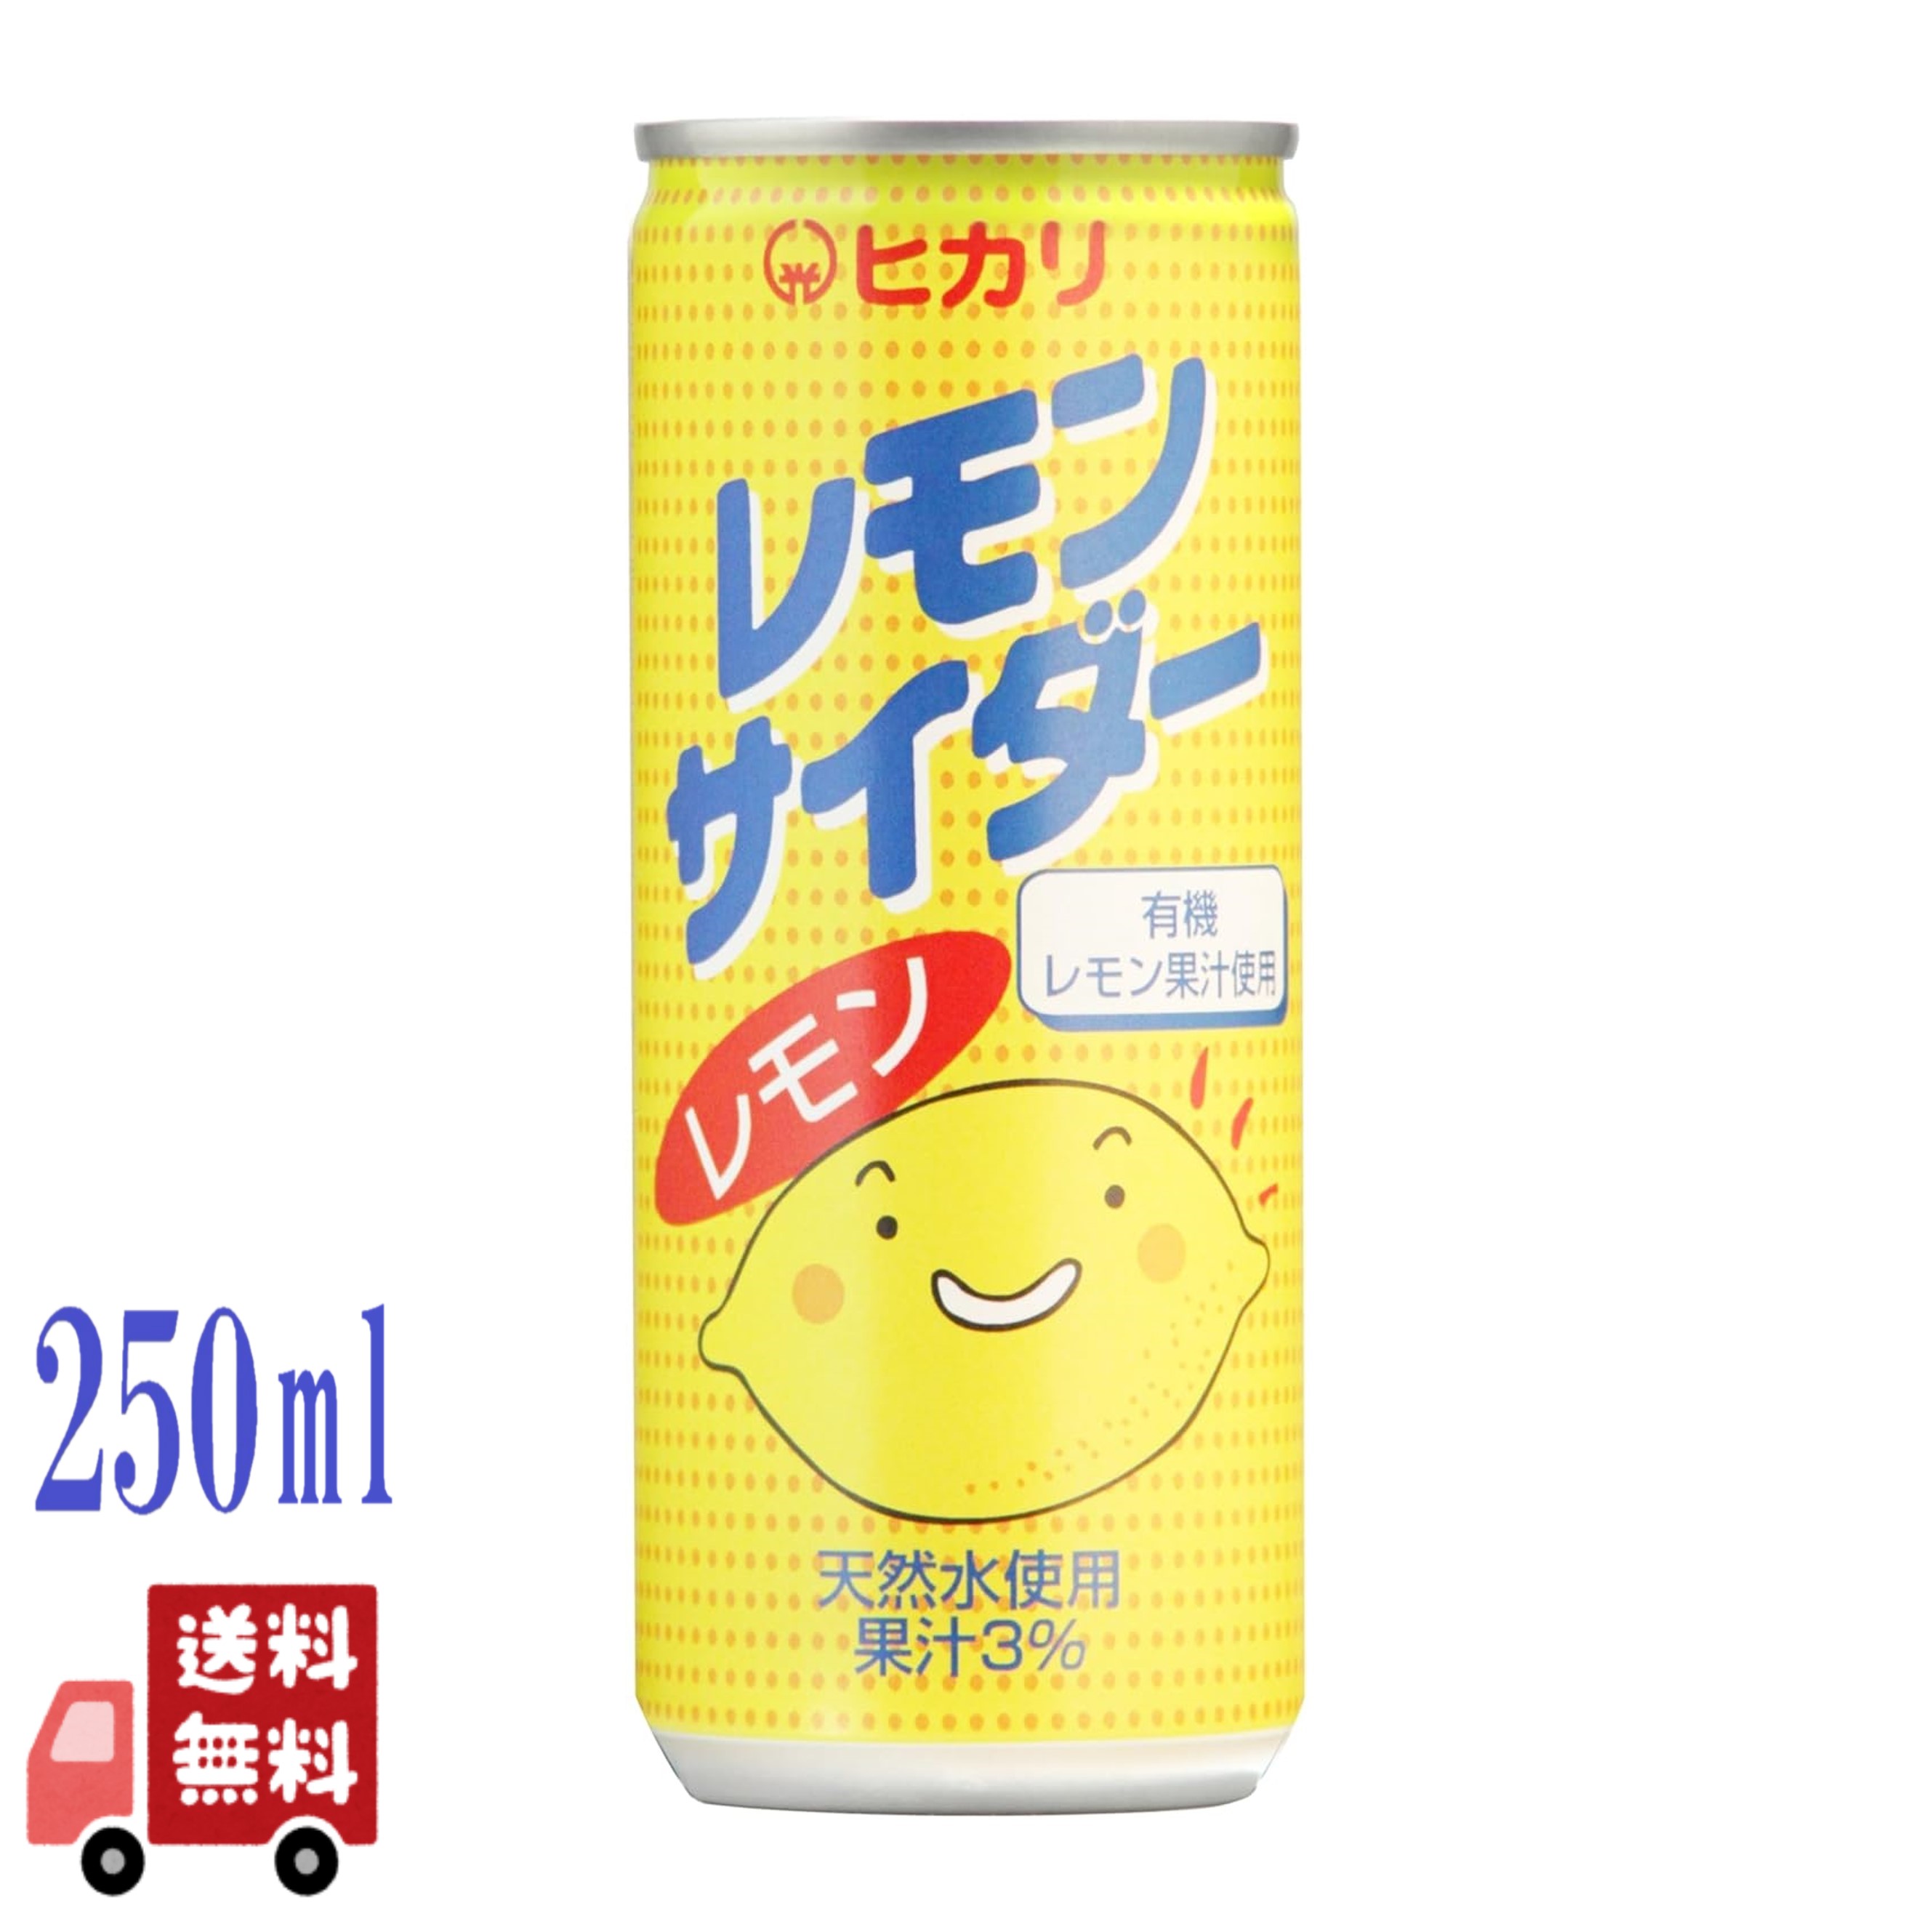 ヒカリ レモンサイダー 250ml 缶 缶ジュース 炭酸飲料 有機レモン 飲料 ドリンク 香料不使用 光食品 焼酎